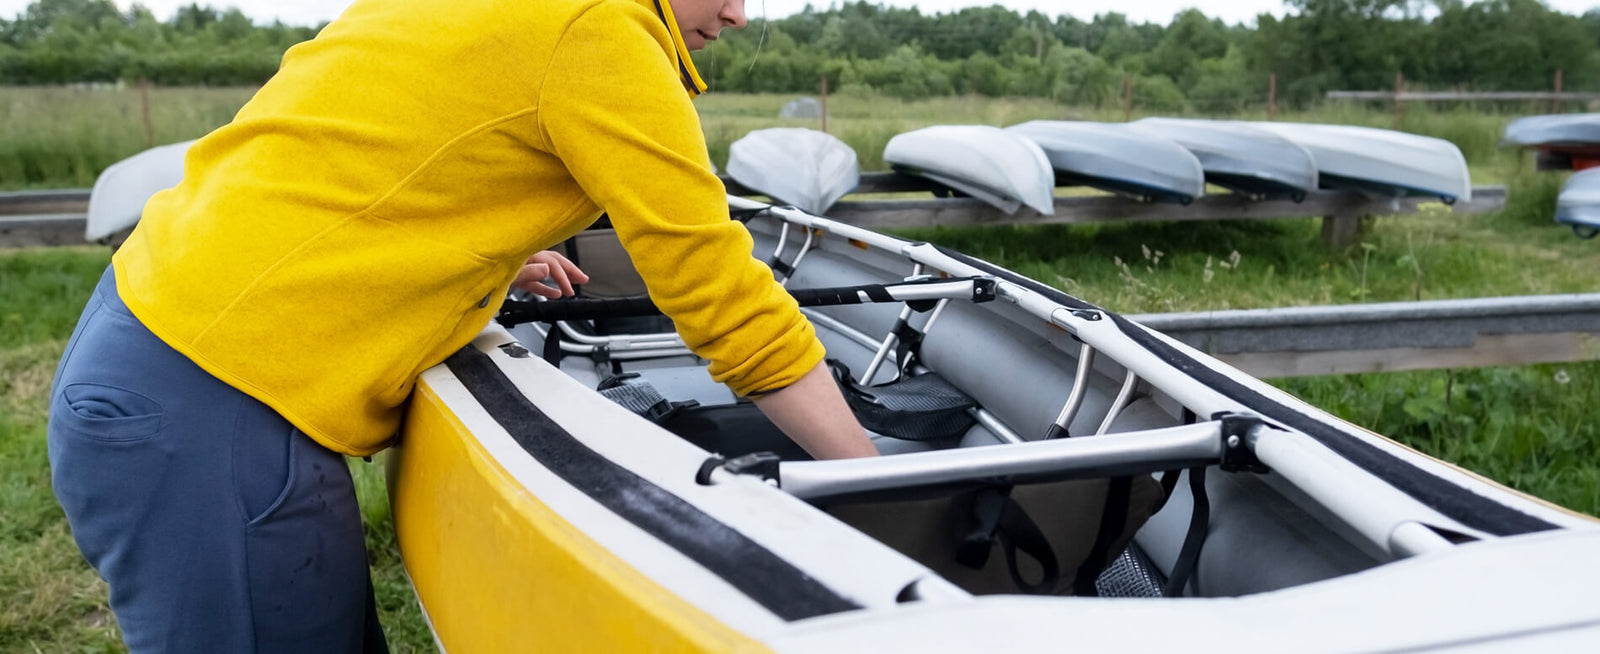 What to Wear Kayaking: Layering Tips